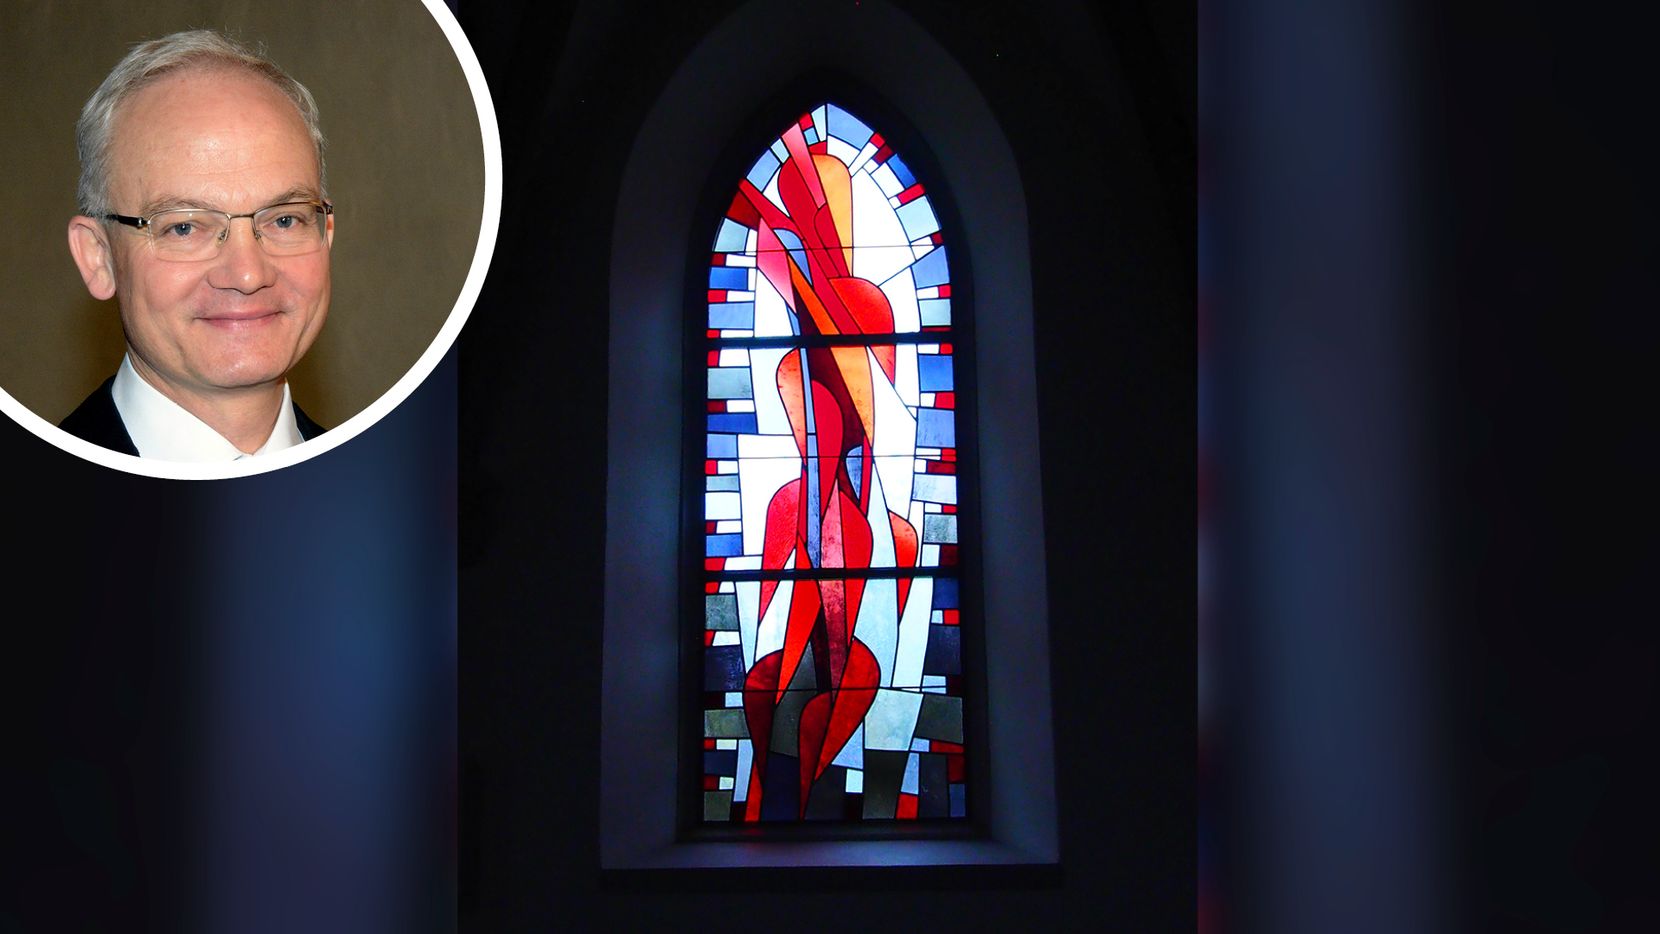 Man sieht ein Buntglasfenster und links oben das Porträt von Pfarrer Arnold Steiner.